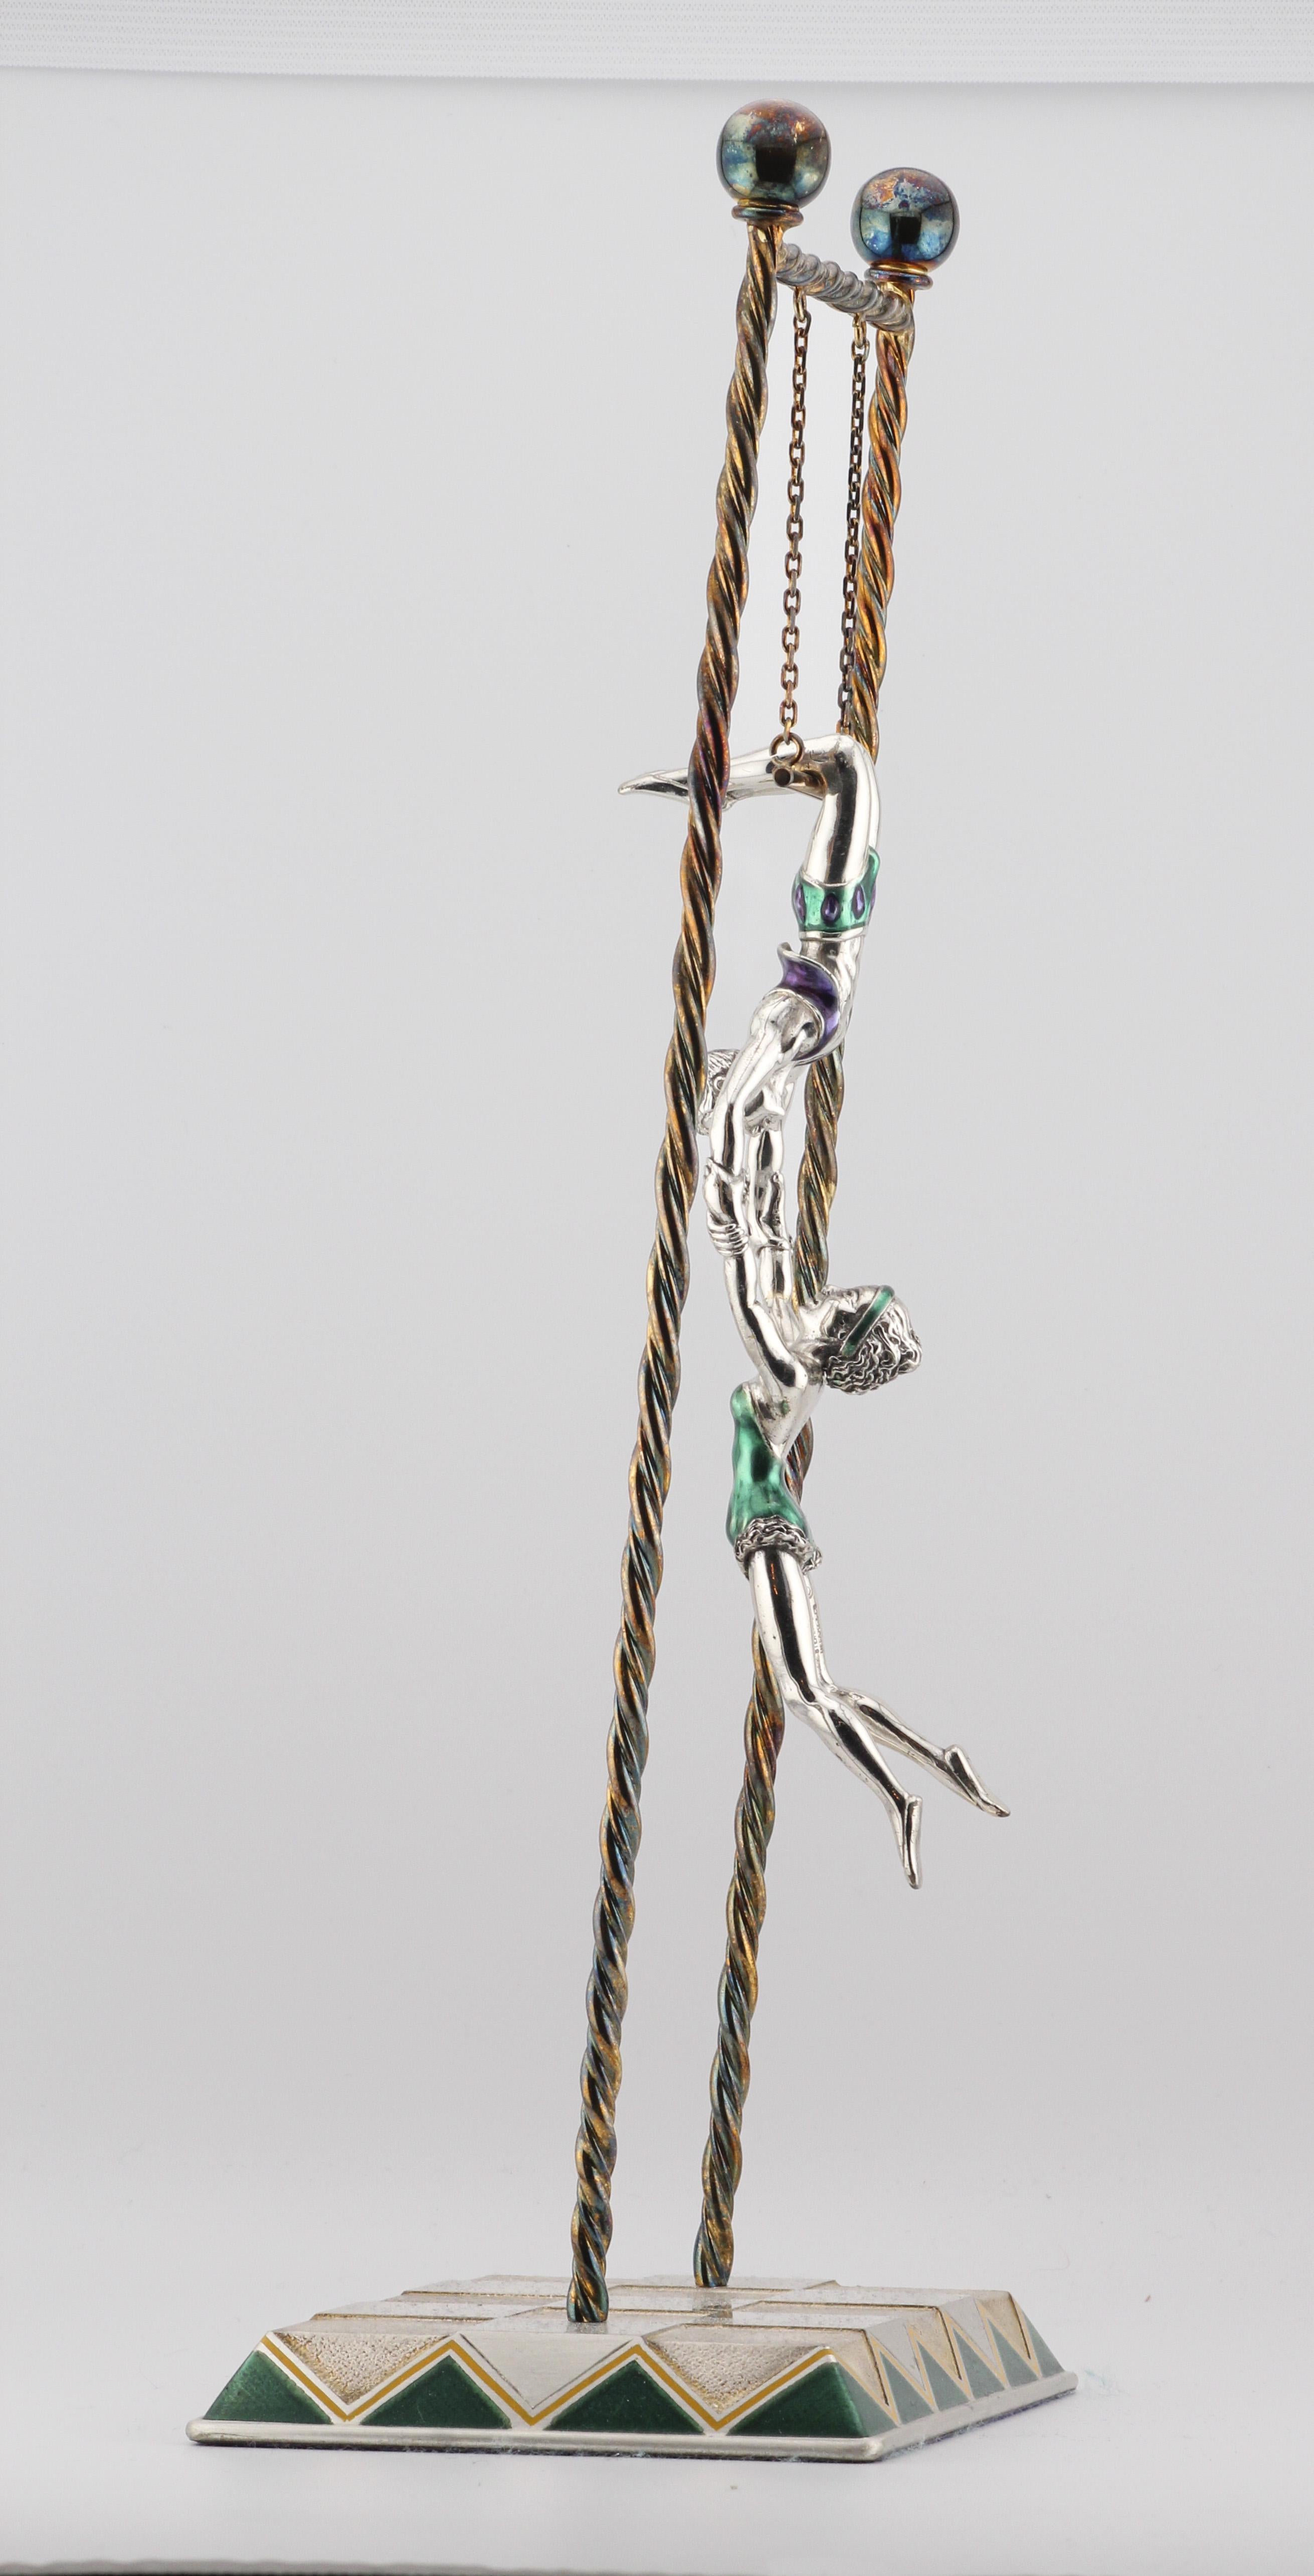 Ein bezauberndes Wunderwerk von Tiffany & Co. ist die Circus Sterling Silver Enamel Trapeze Acrobats. Dieses exquisite Stück verkörpert den kühnen Geist und die Anmut von Trapezkünstlern in einer fesselnden Darstellung von Kunstfertigkeit und